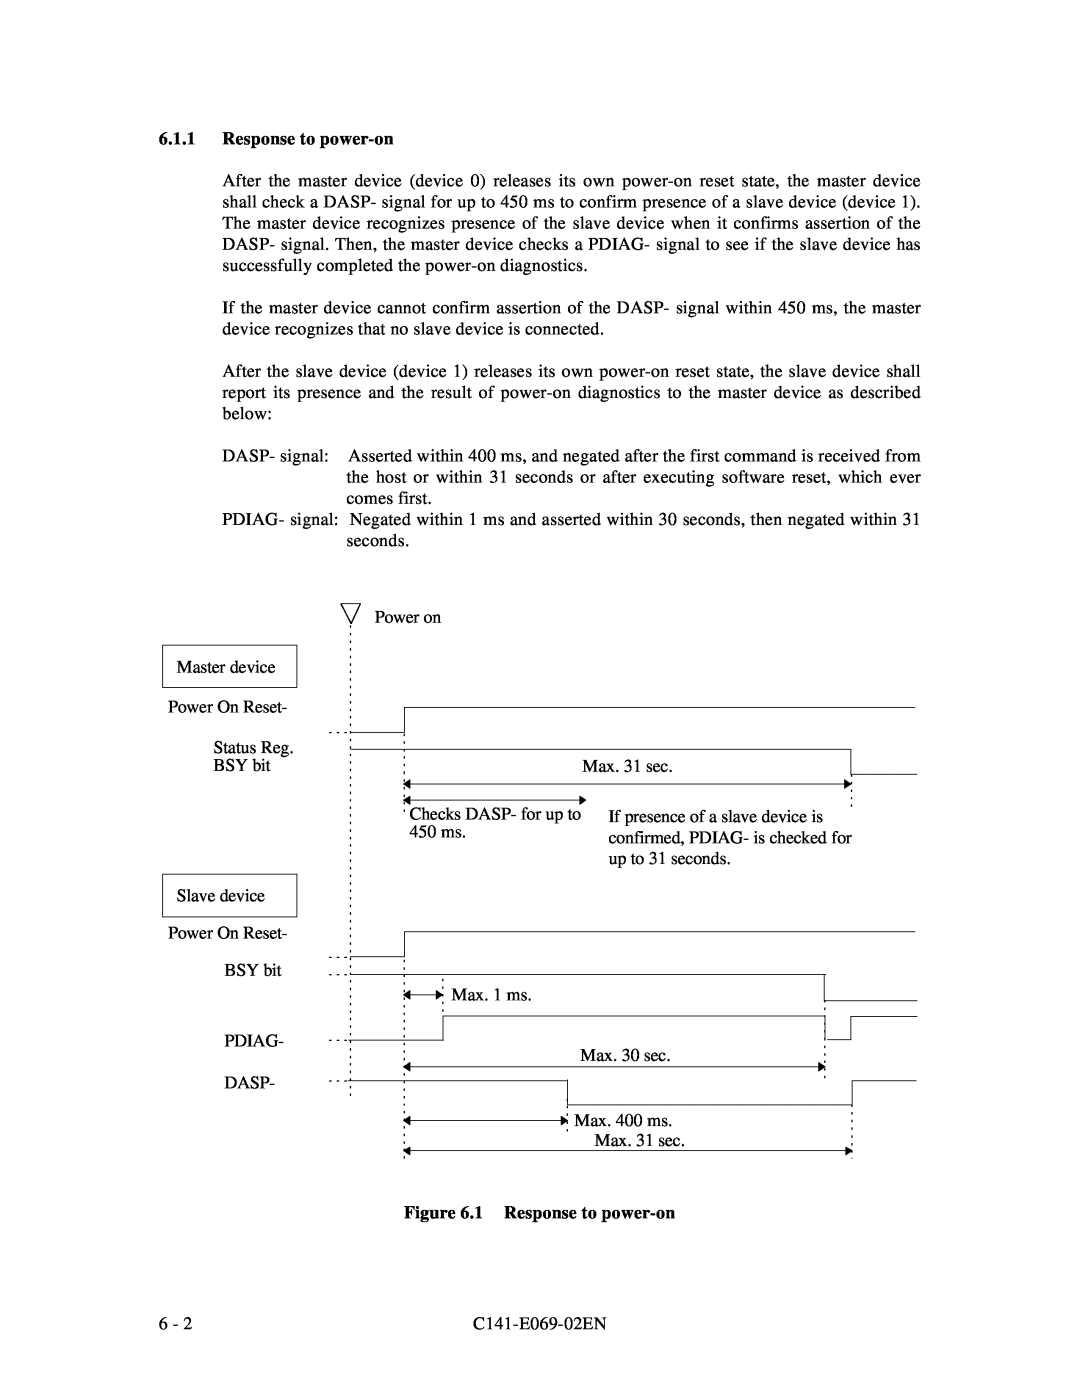 Fujitsu MPD3XXXAT manual 1 Response to power-on 